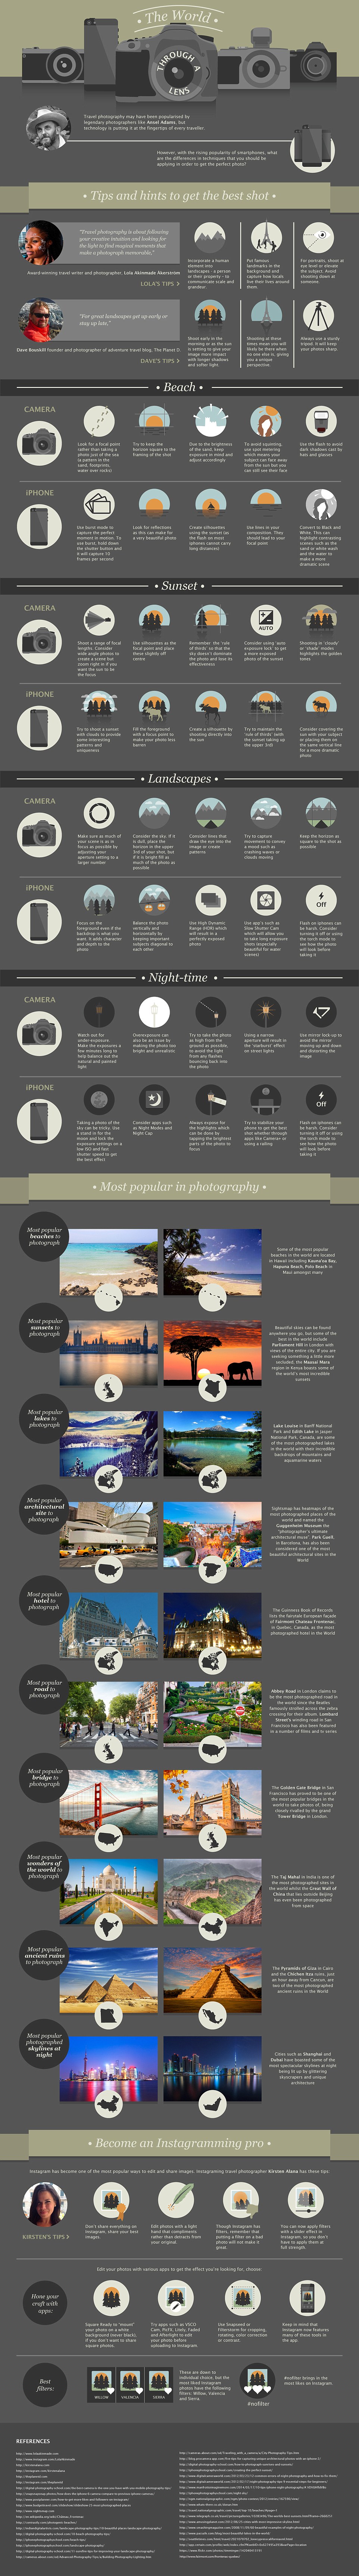 PR-Coup von Fairmont Hotels: Sensationelle Infographik für gelungene Urlaubsfotos